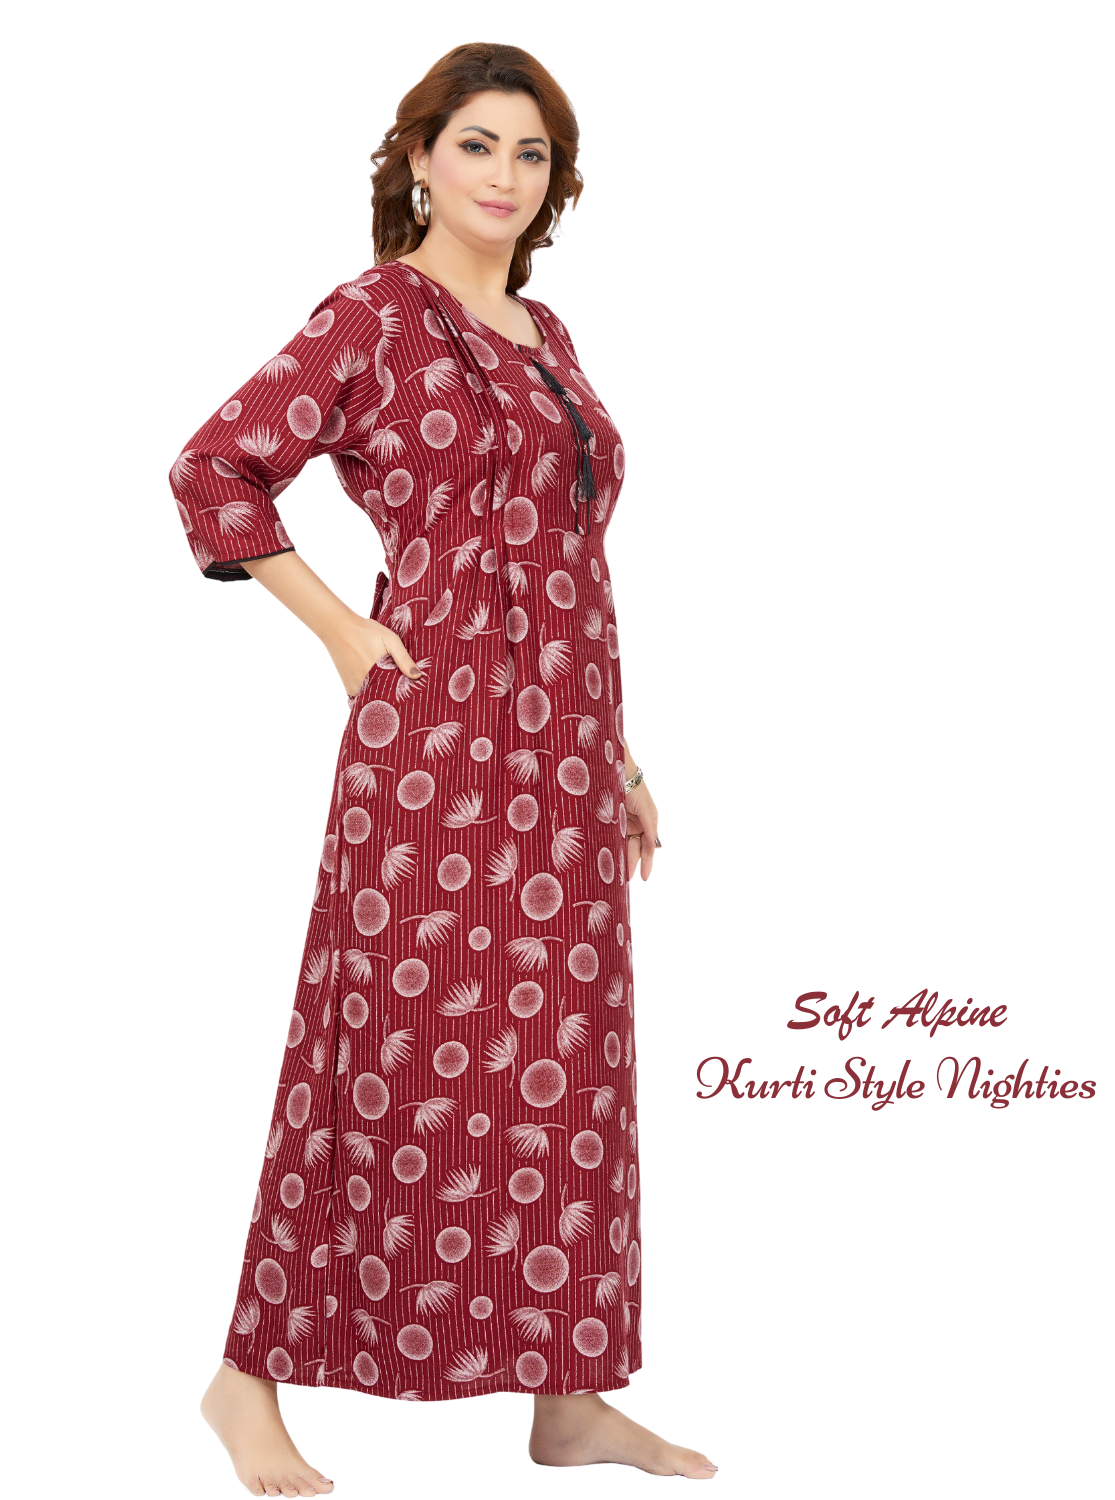 MANGAI Alpine KURTI Style | Beautiful Stylish KURTI Model | New Collection's for Stylish Women's